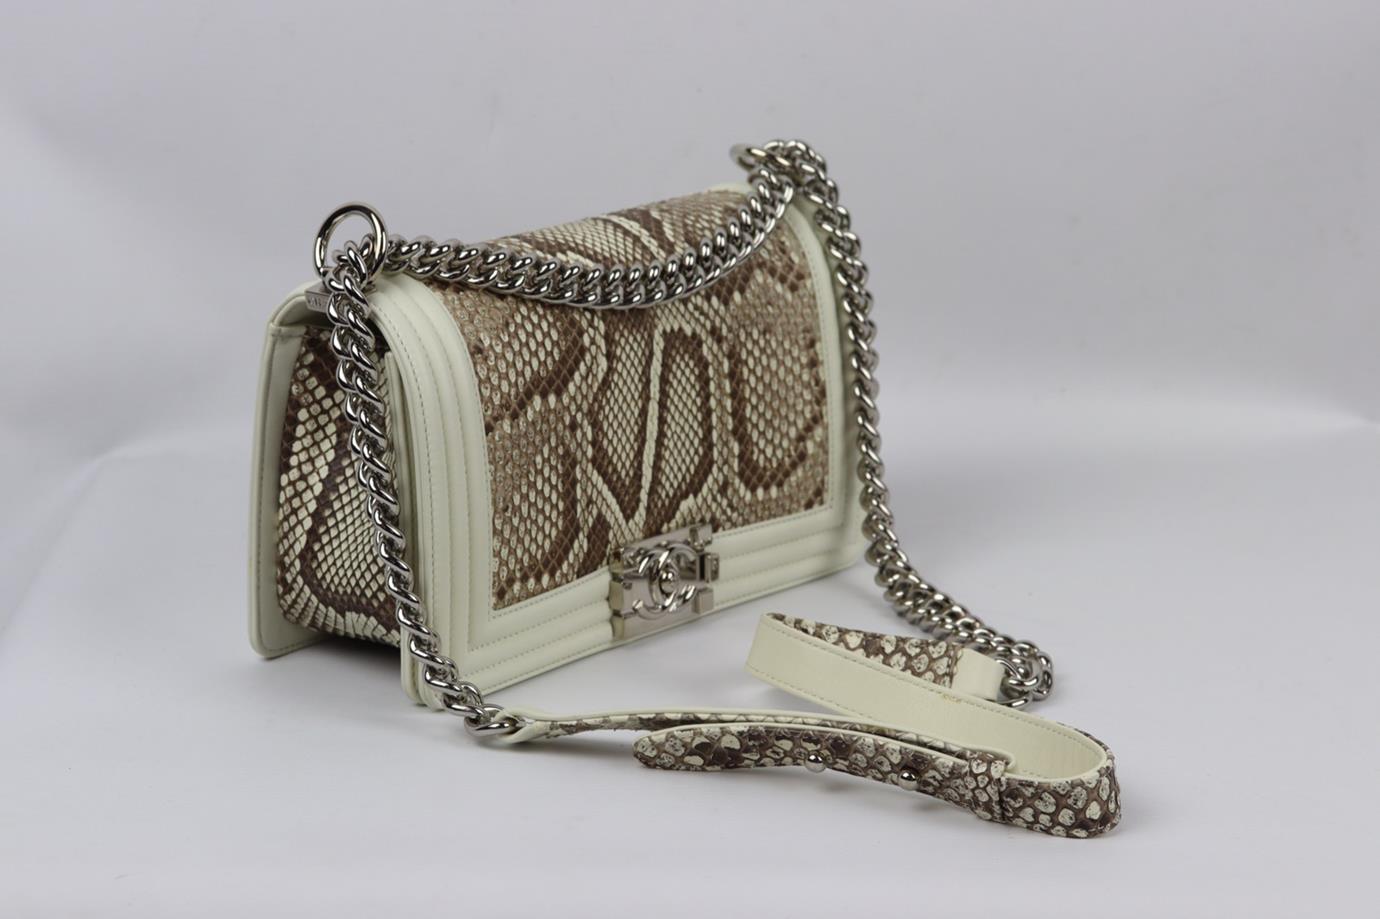 Chanel 2014 Boy Medium Python And Leather Shoulder Bag For Sale 1